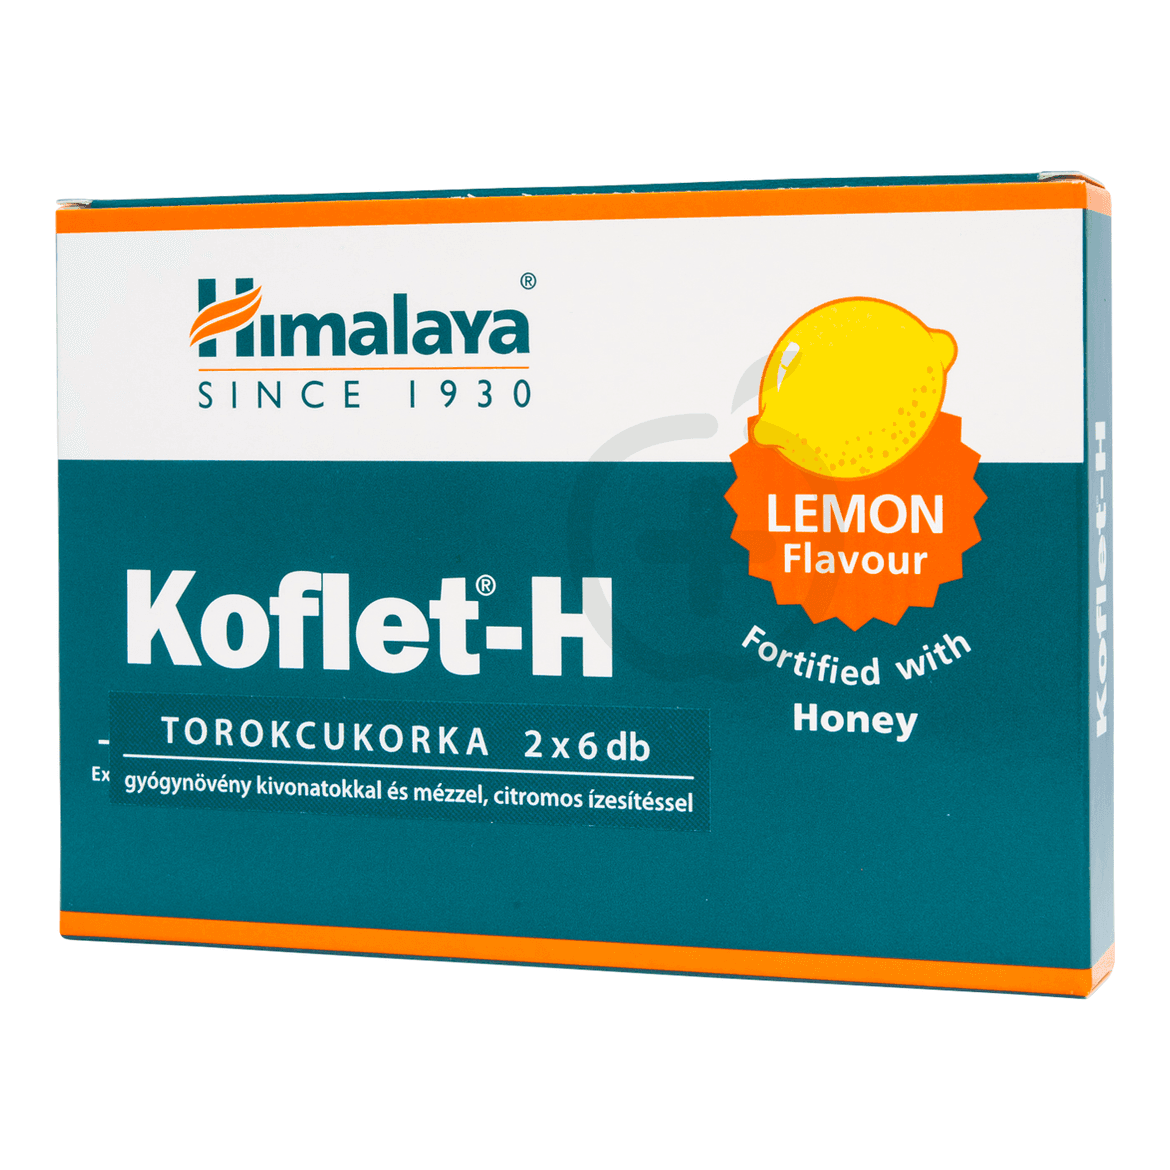 Himalaya Koflet-H torokcukorka citrom ízesítéssel 12 db